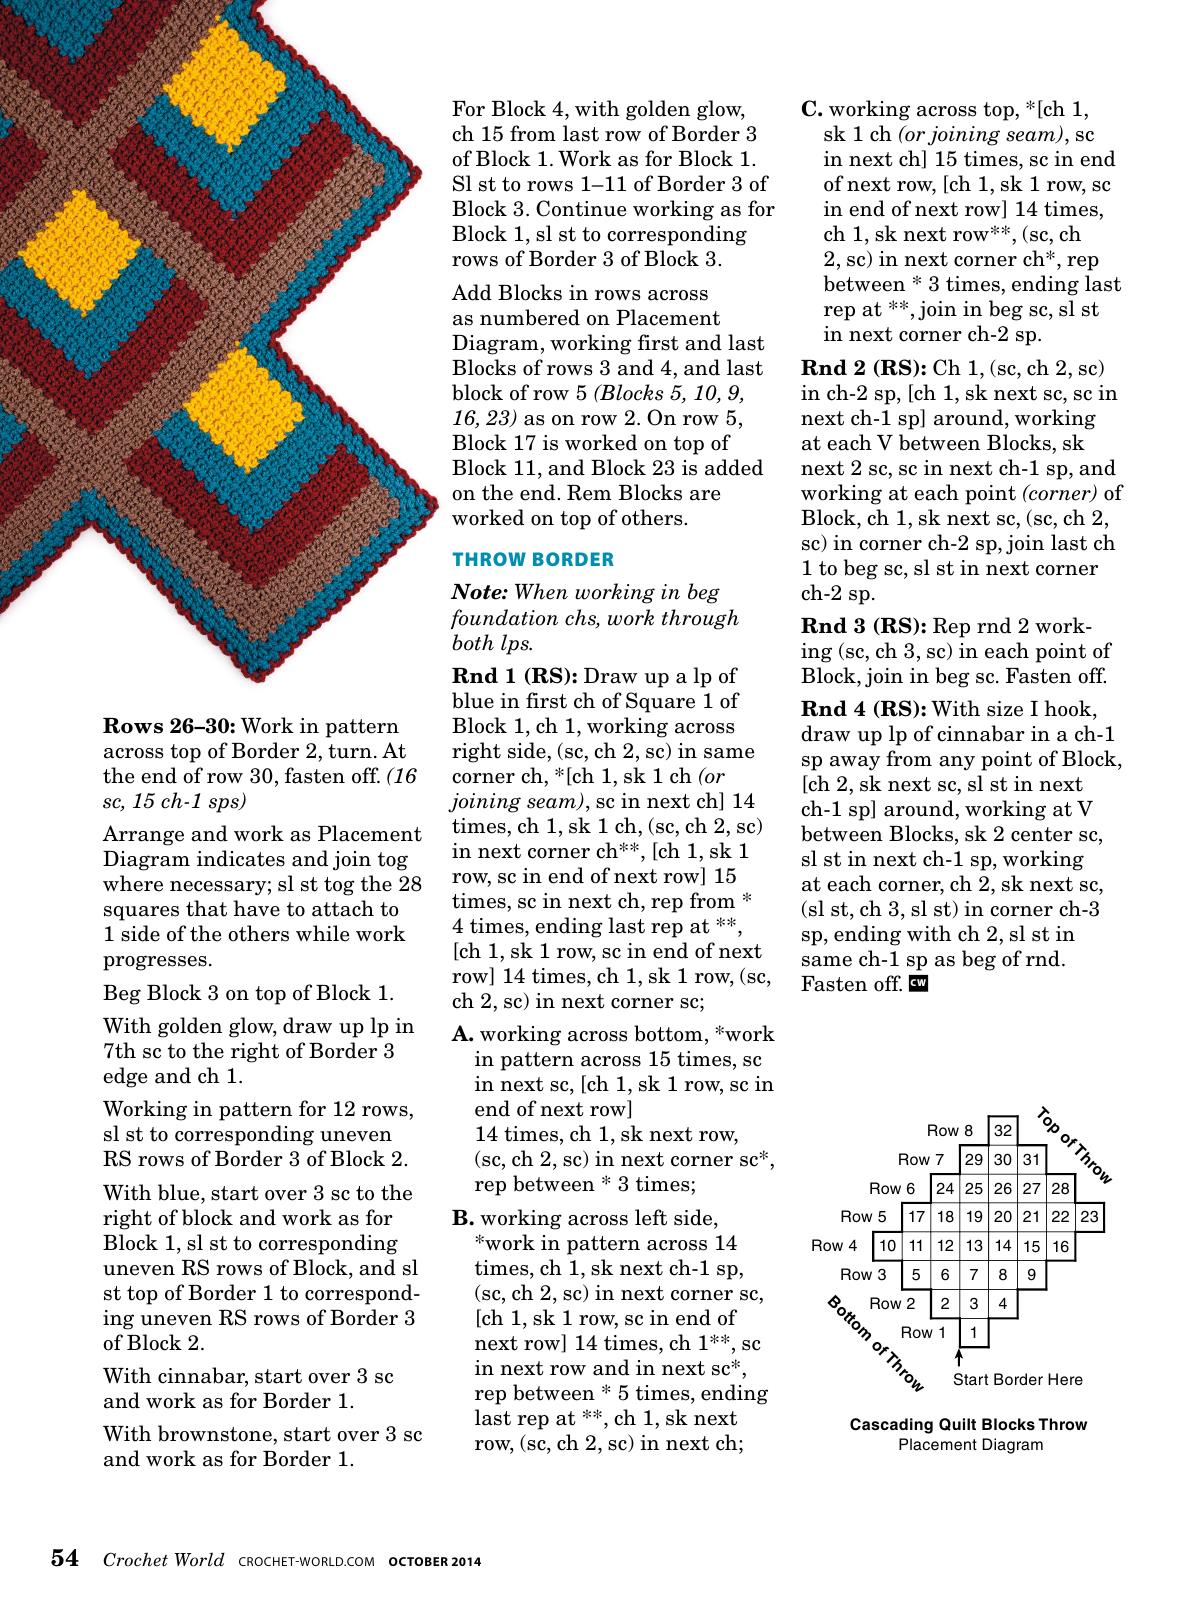 cascading quilt crochet blocks pattern 2